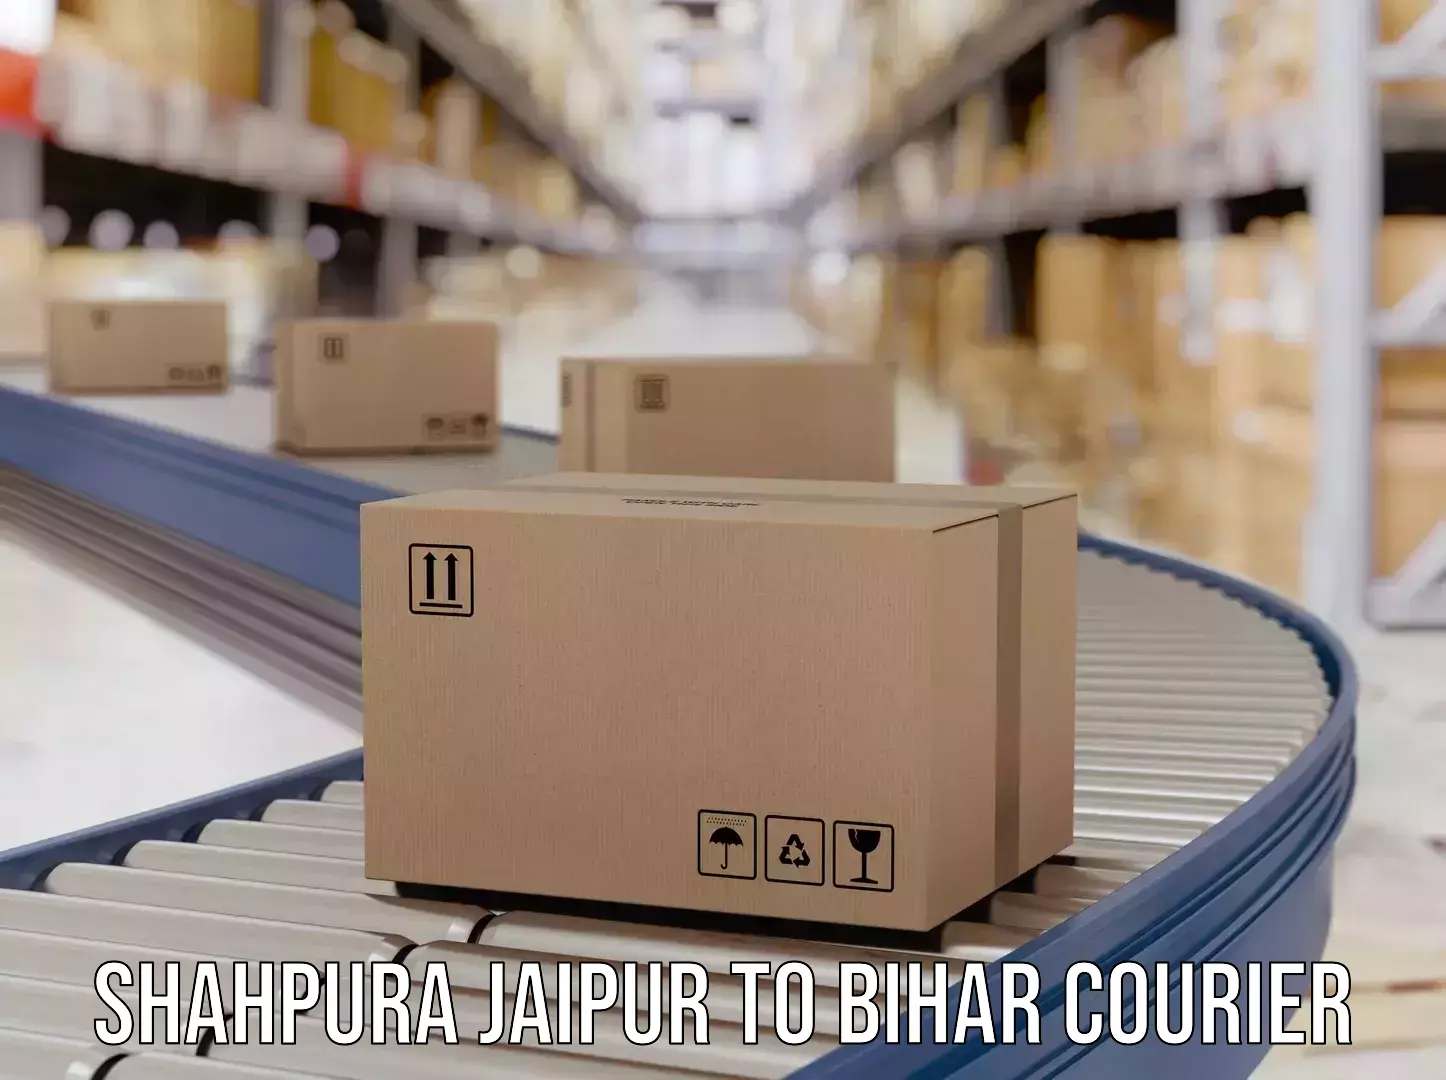 Nationwide parcel services Shahpura Jaipur to Alamnagar